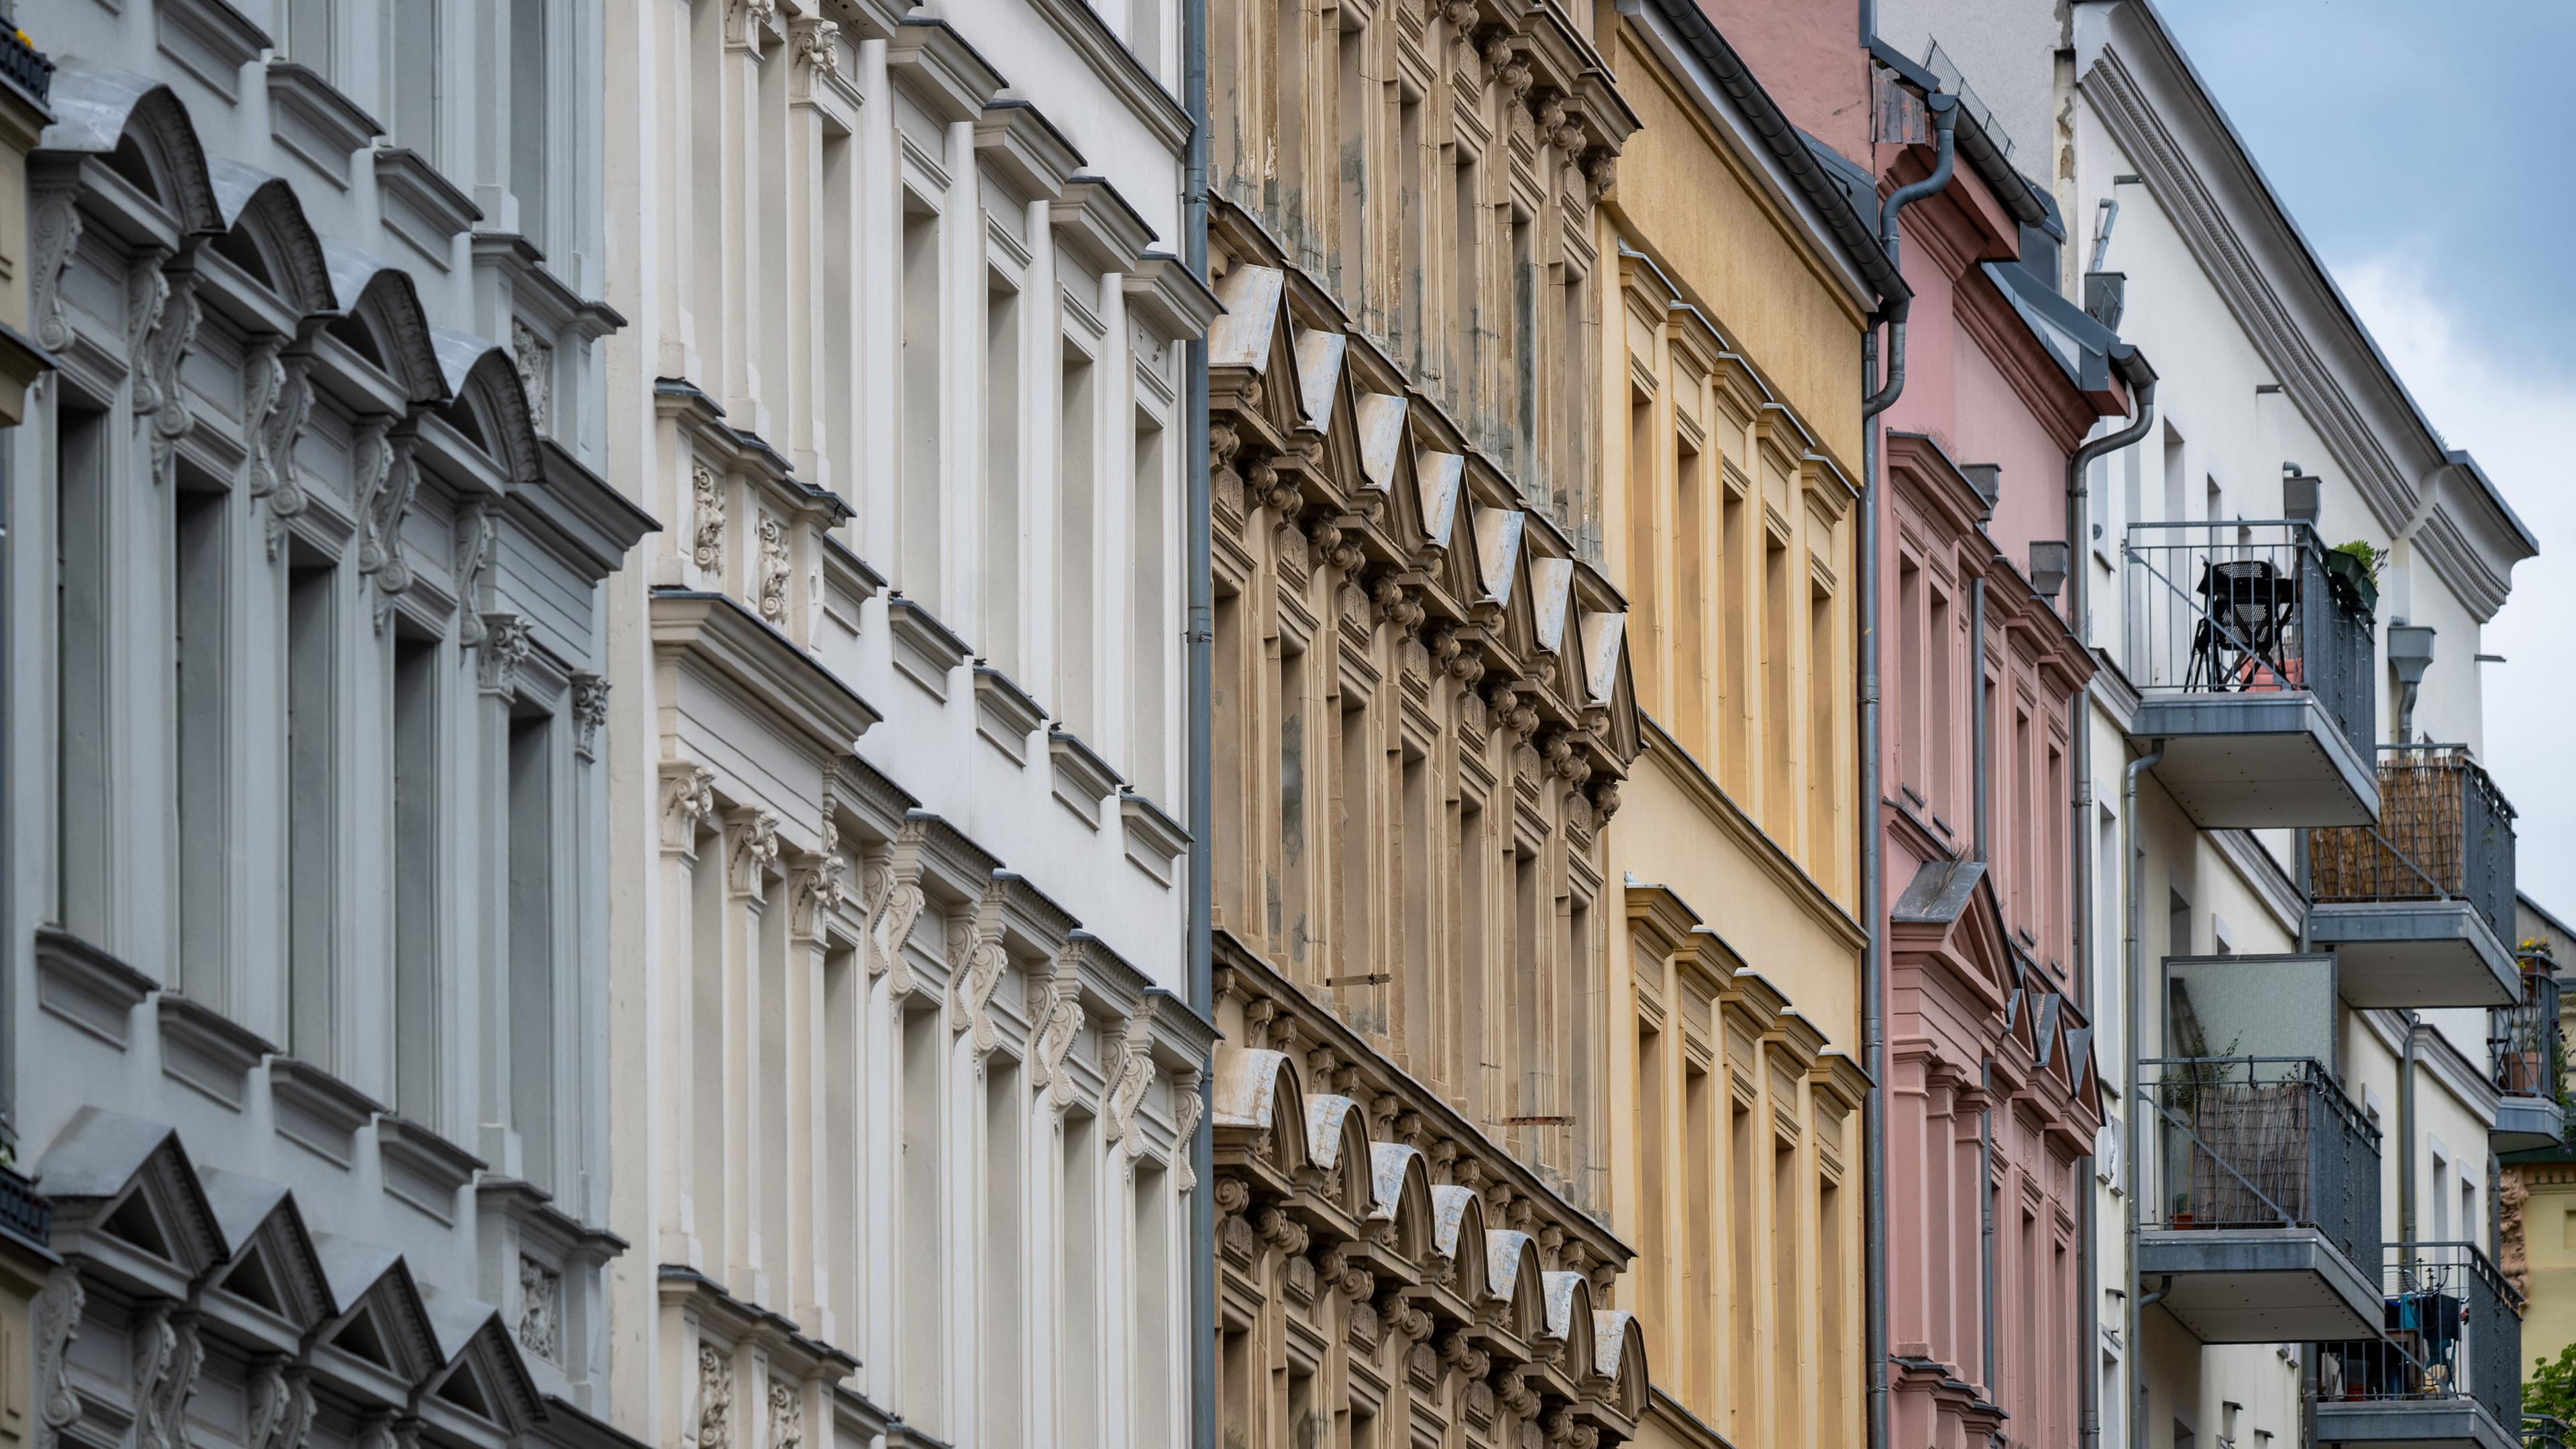 Zu sehen ist eine Reihe verschiedenfarbiger Hausfassaden in Berlin.